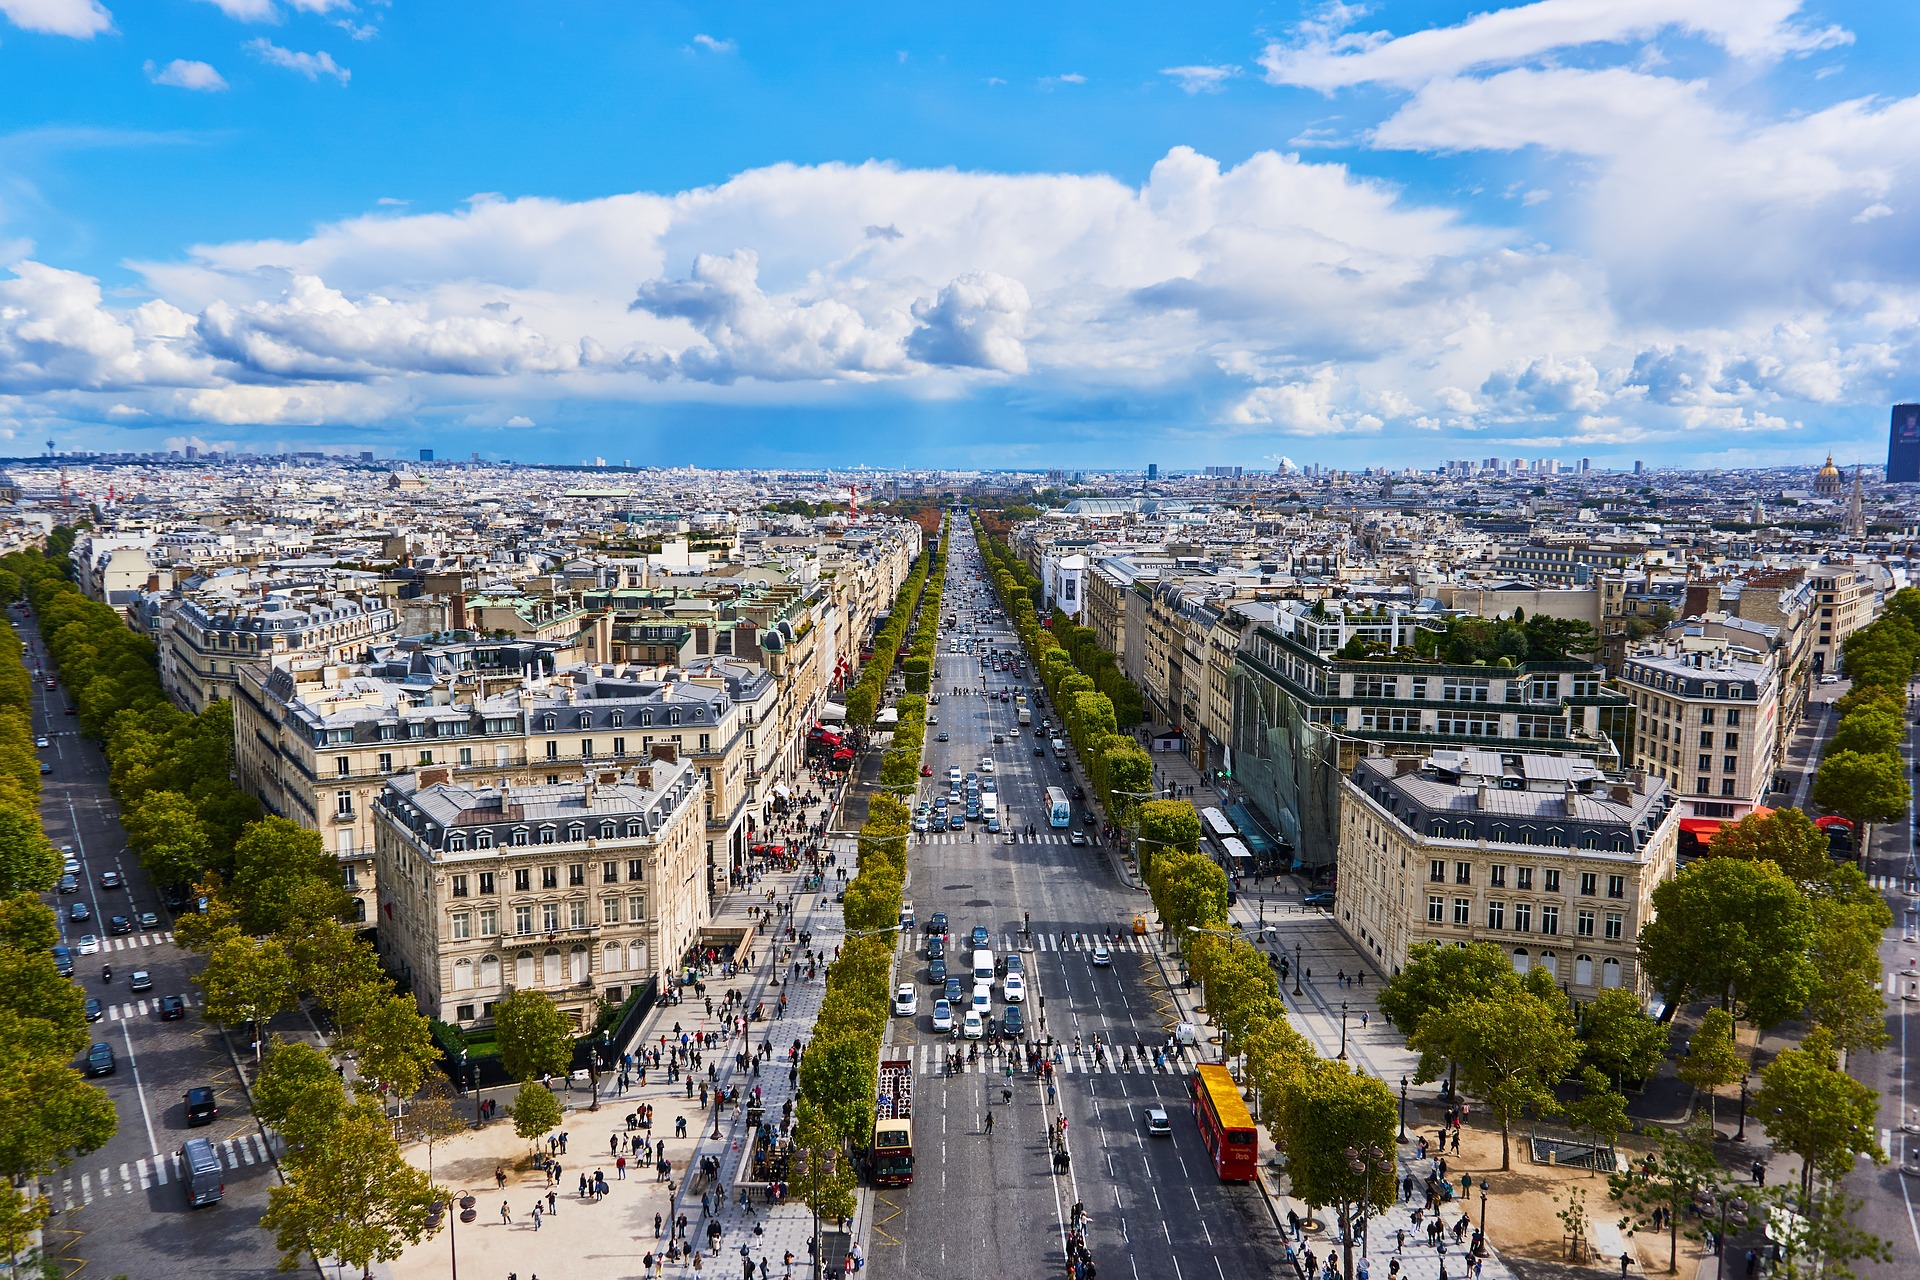 L'Avenue des Champs-Élysées s'estén des de la Plaça de la Concòrdia fins a l'Arc de Triomf i és famosa per les botigues de luxe i els hotels elegants.